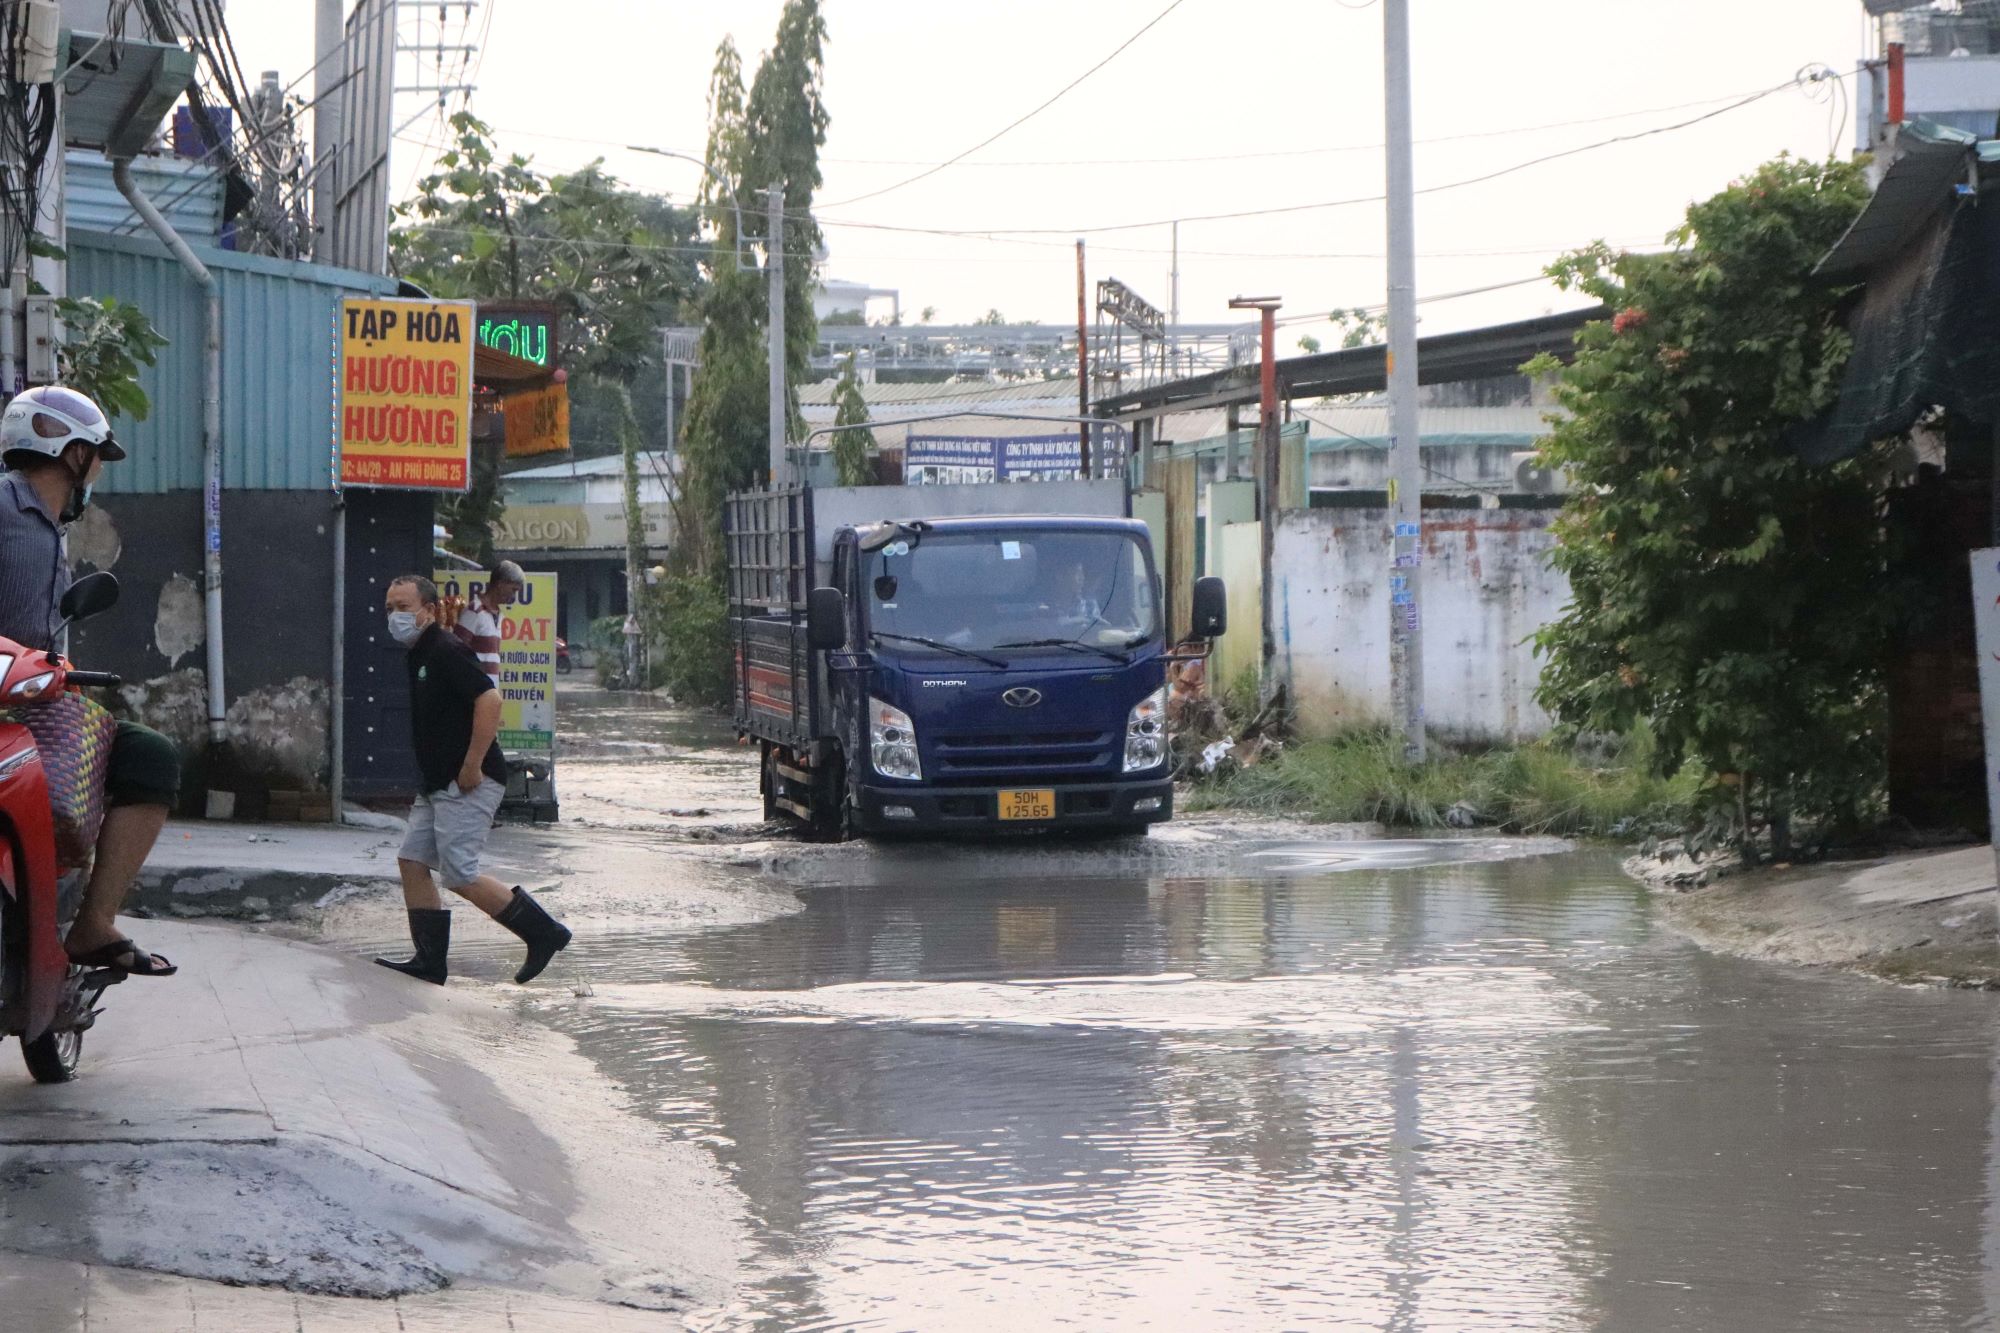 Con đường ngập nửa năm nước chưa rút ở Sài Gòn - Ảnh 3.